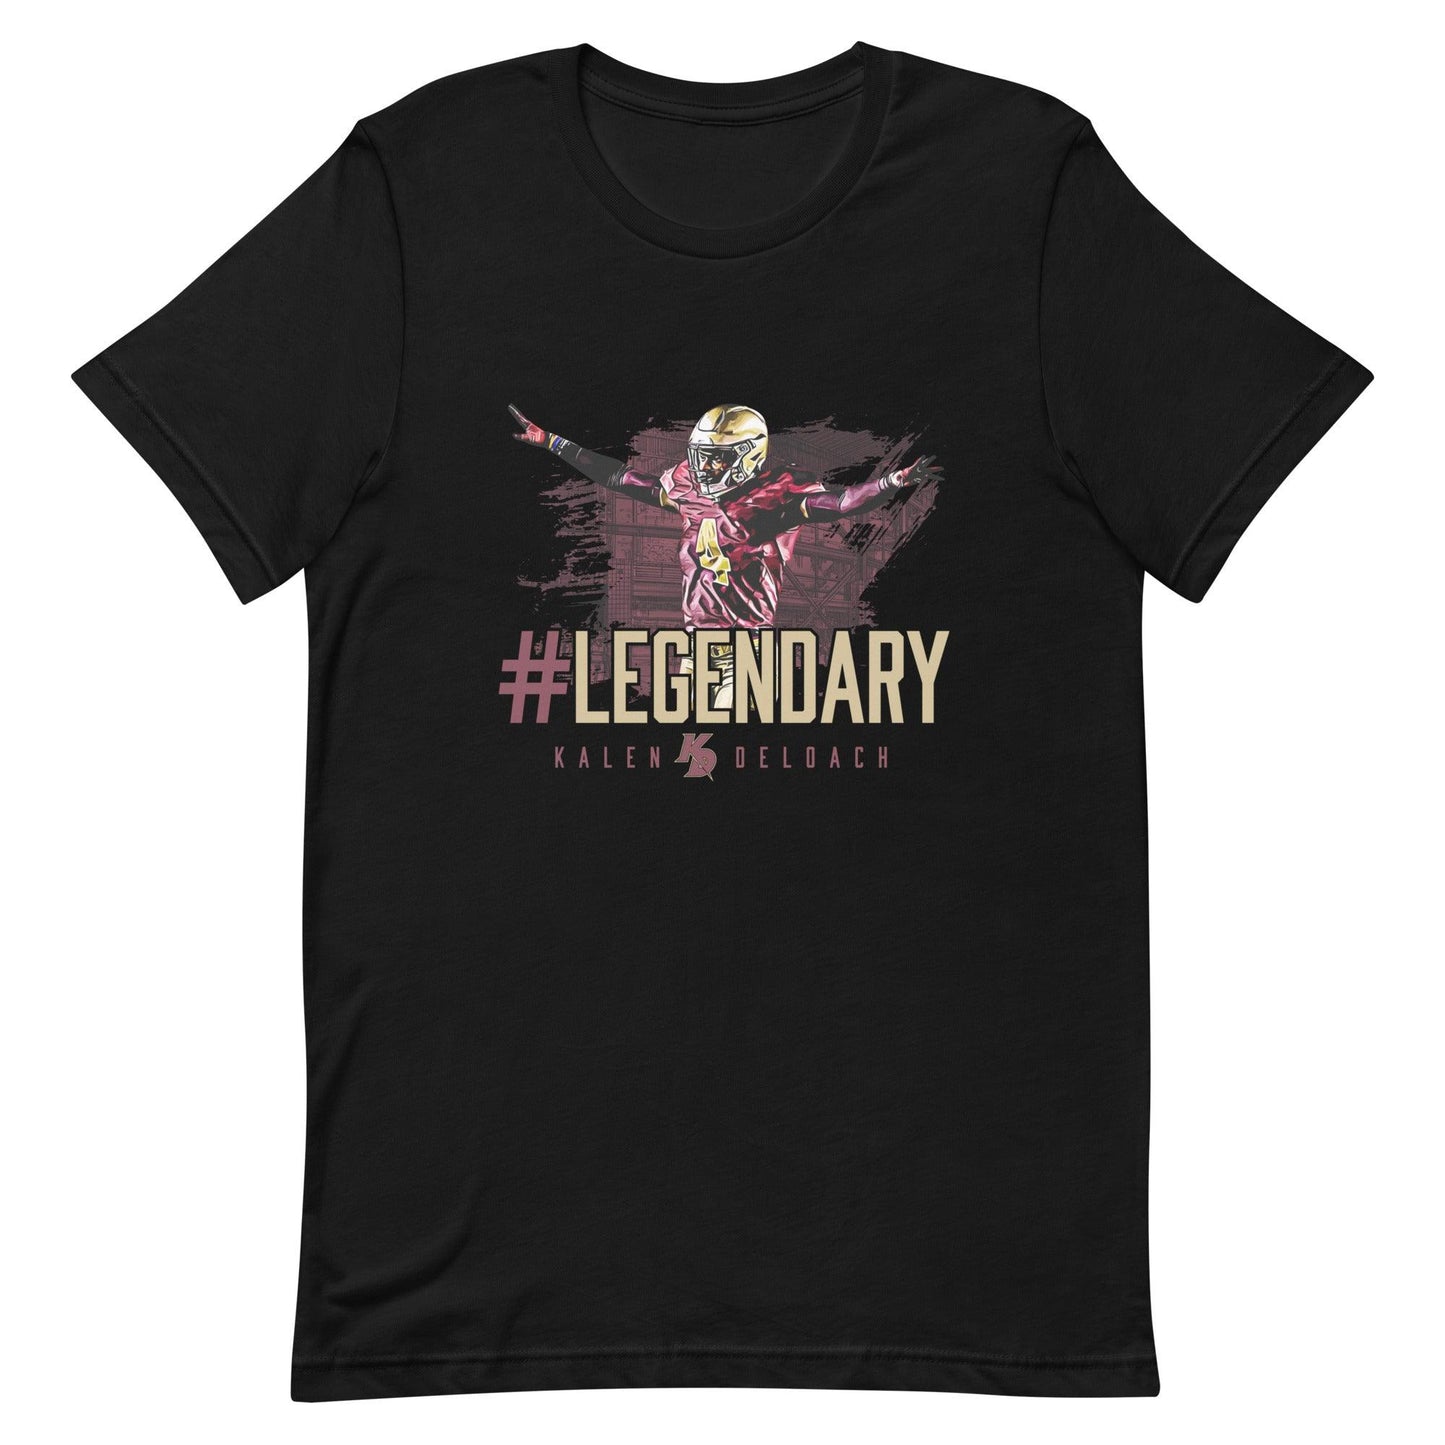 Kalen Deloach "#Legendary" t-shirt - Fan Arch